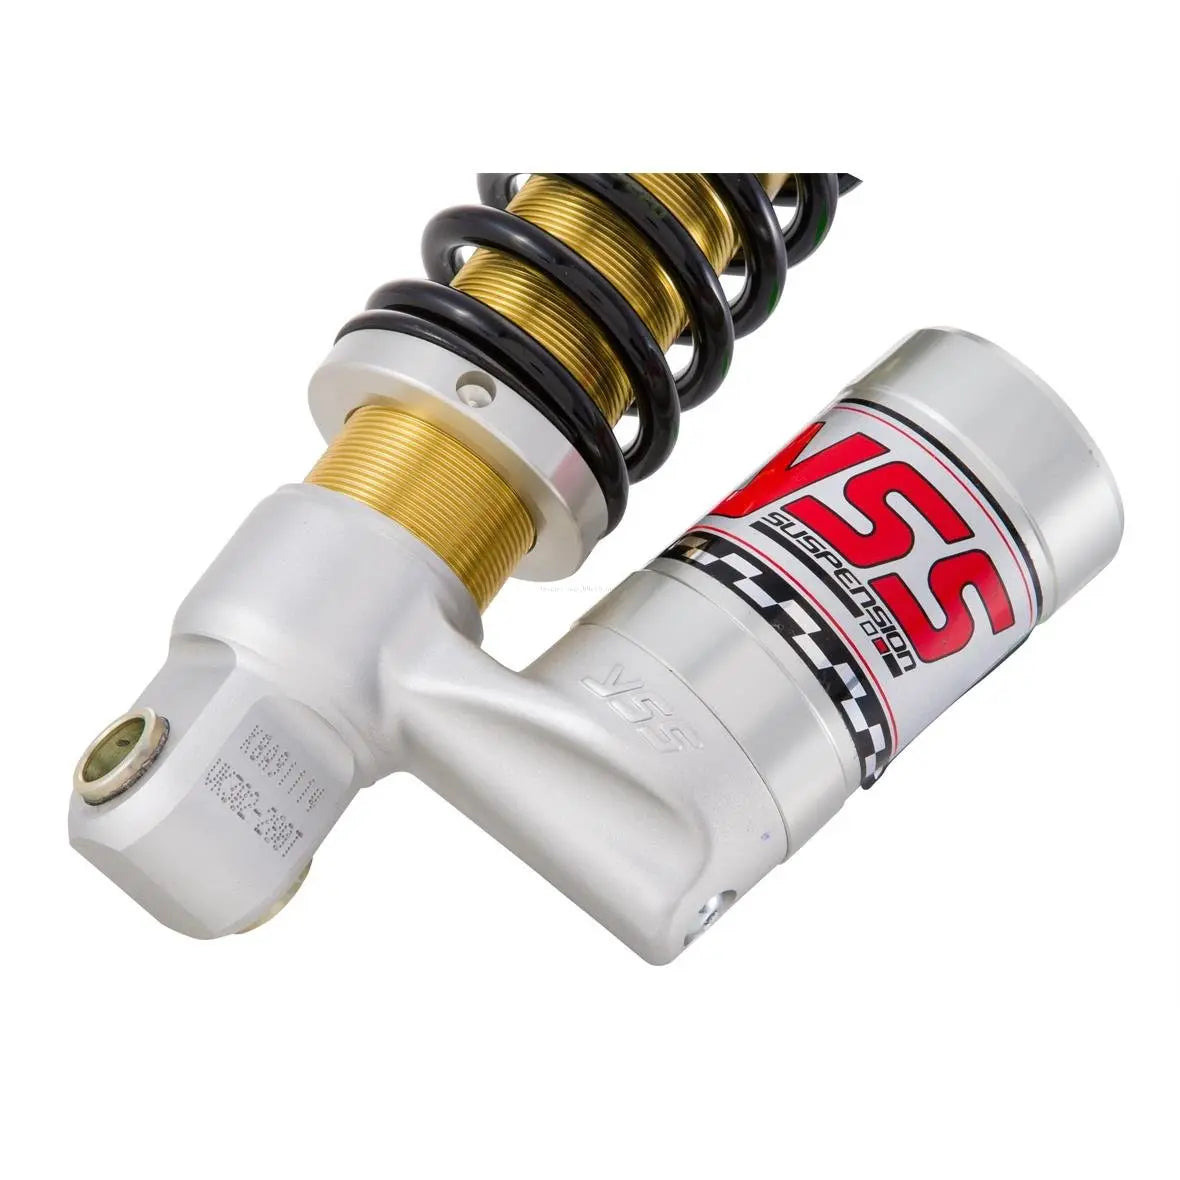 YSS Shock absorber Comfort Front Fork - Sprint and Primavera - iGet -  VB222-230T-02-85